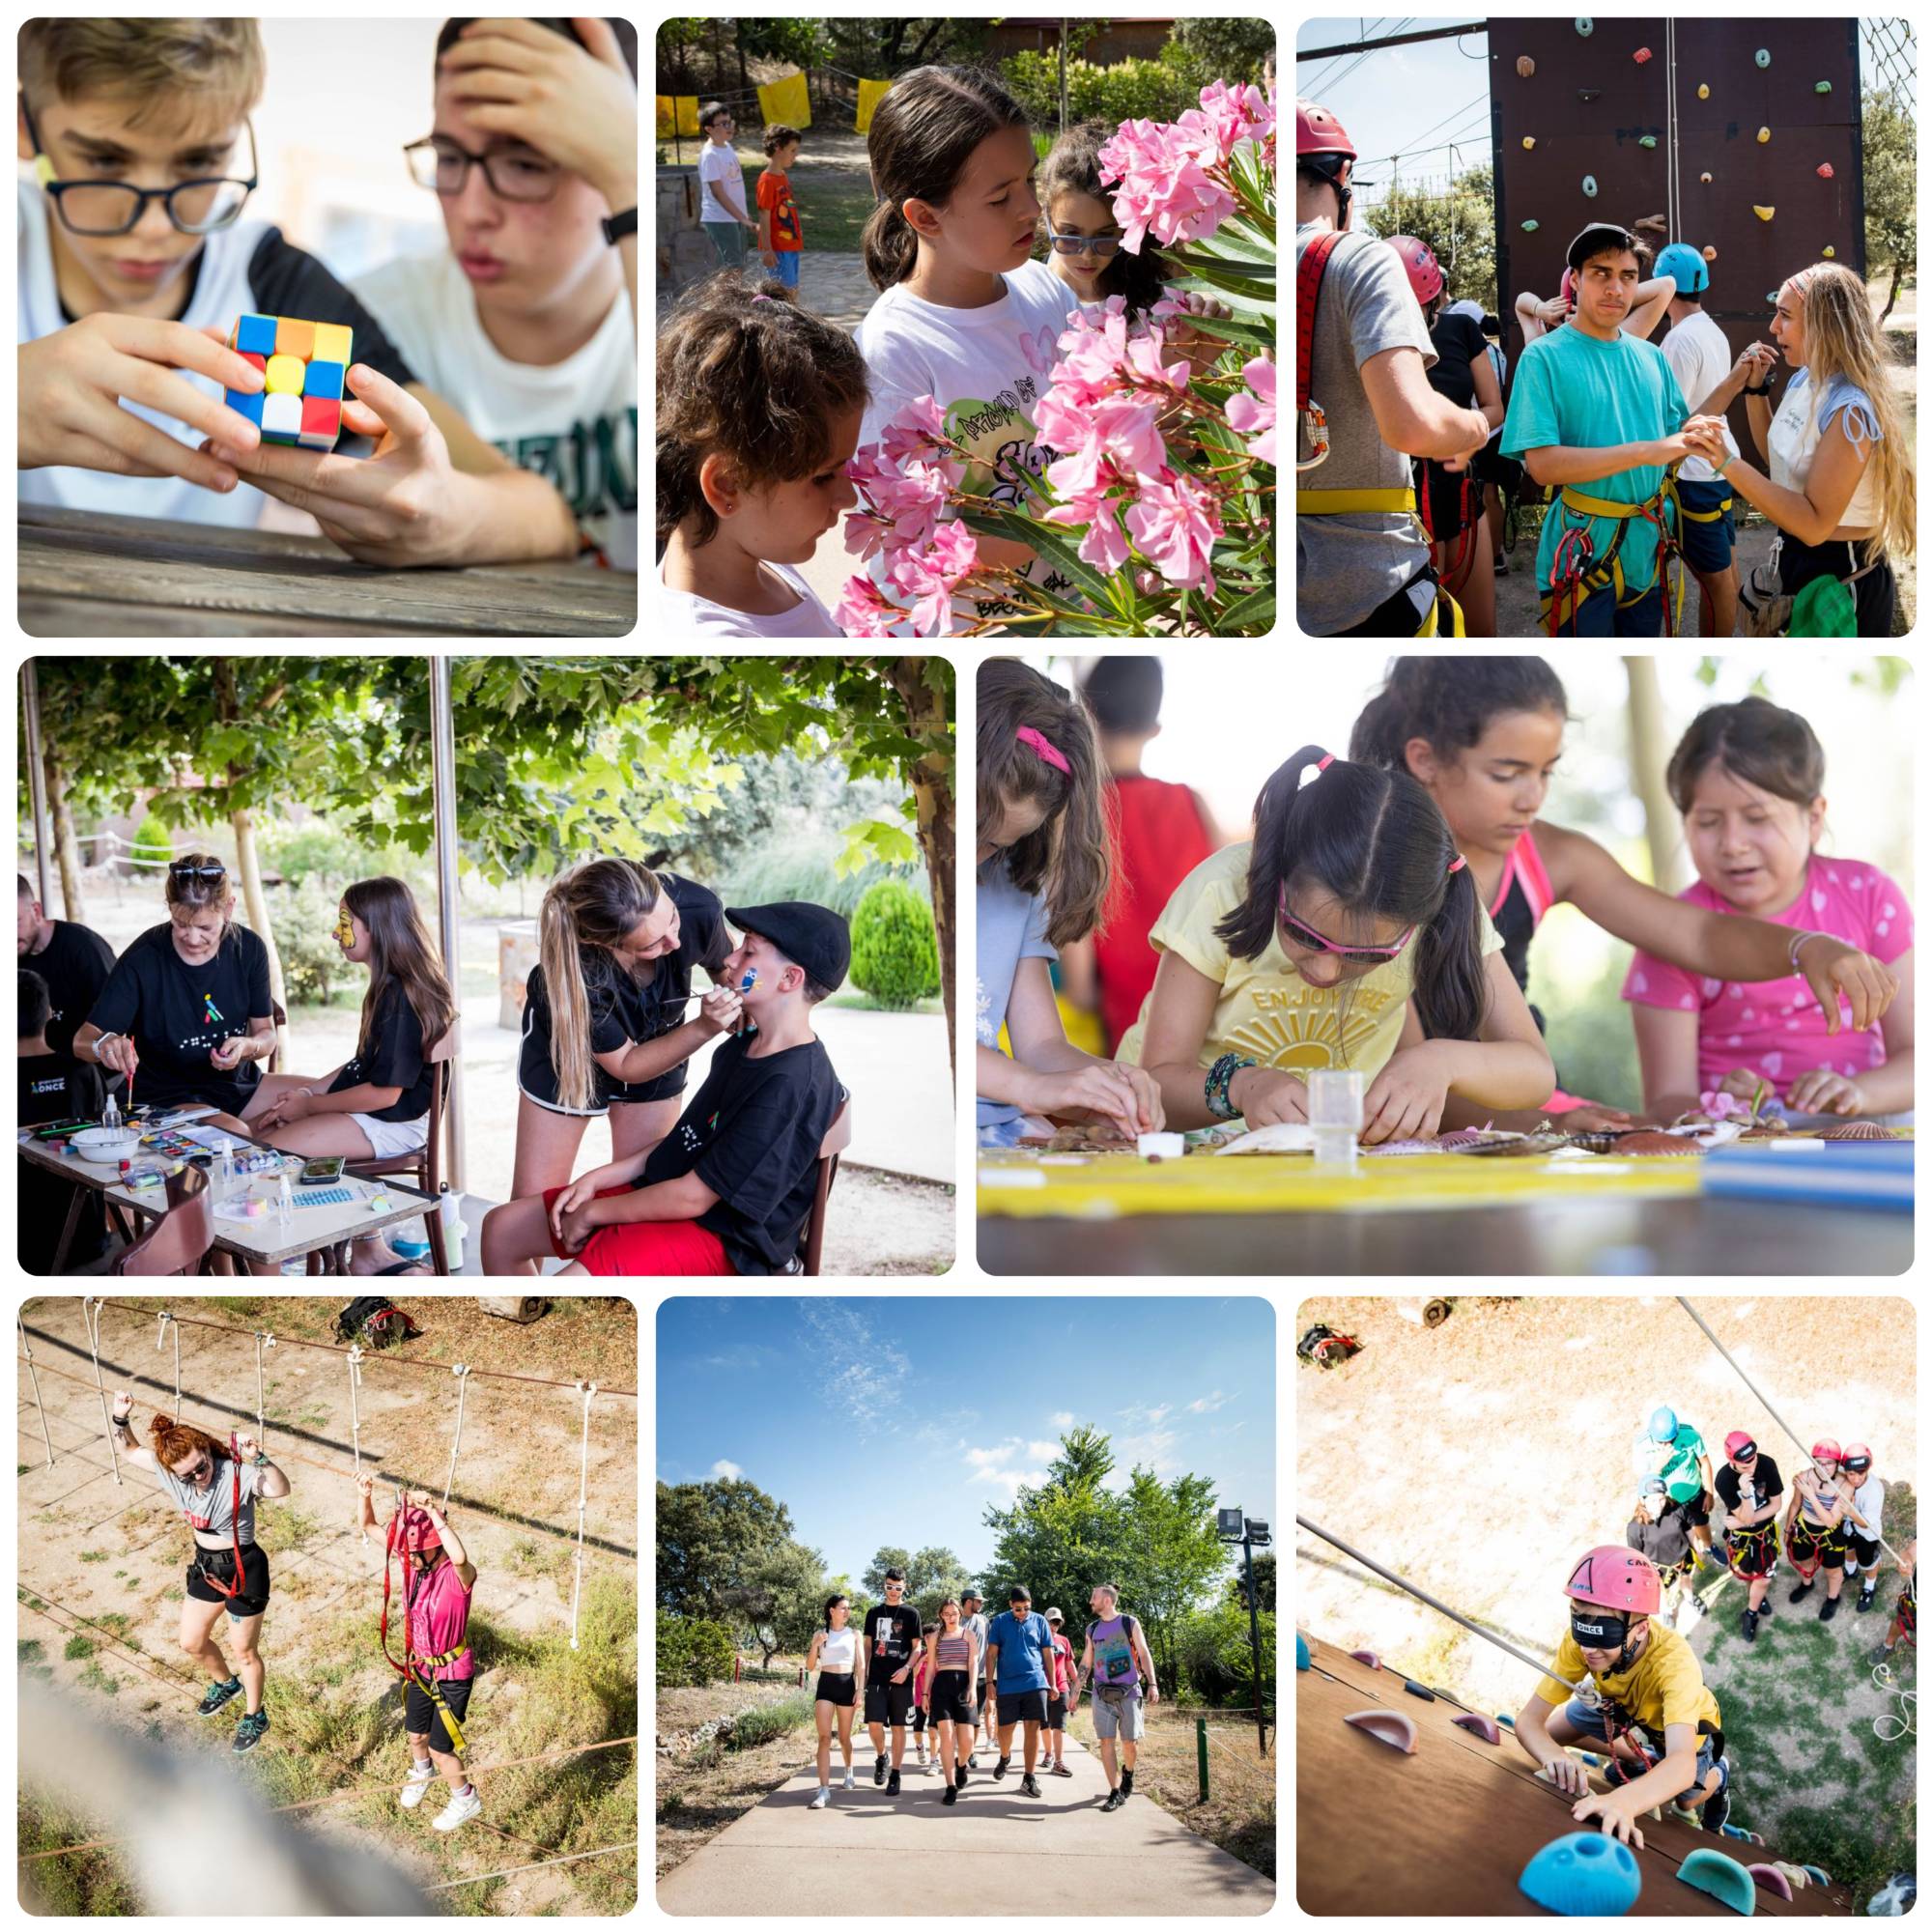 Collage con diferentes momentos y actividades del campamento celebrado en Madrid